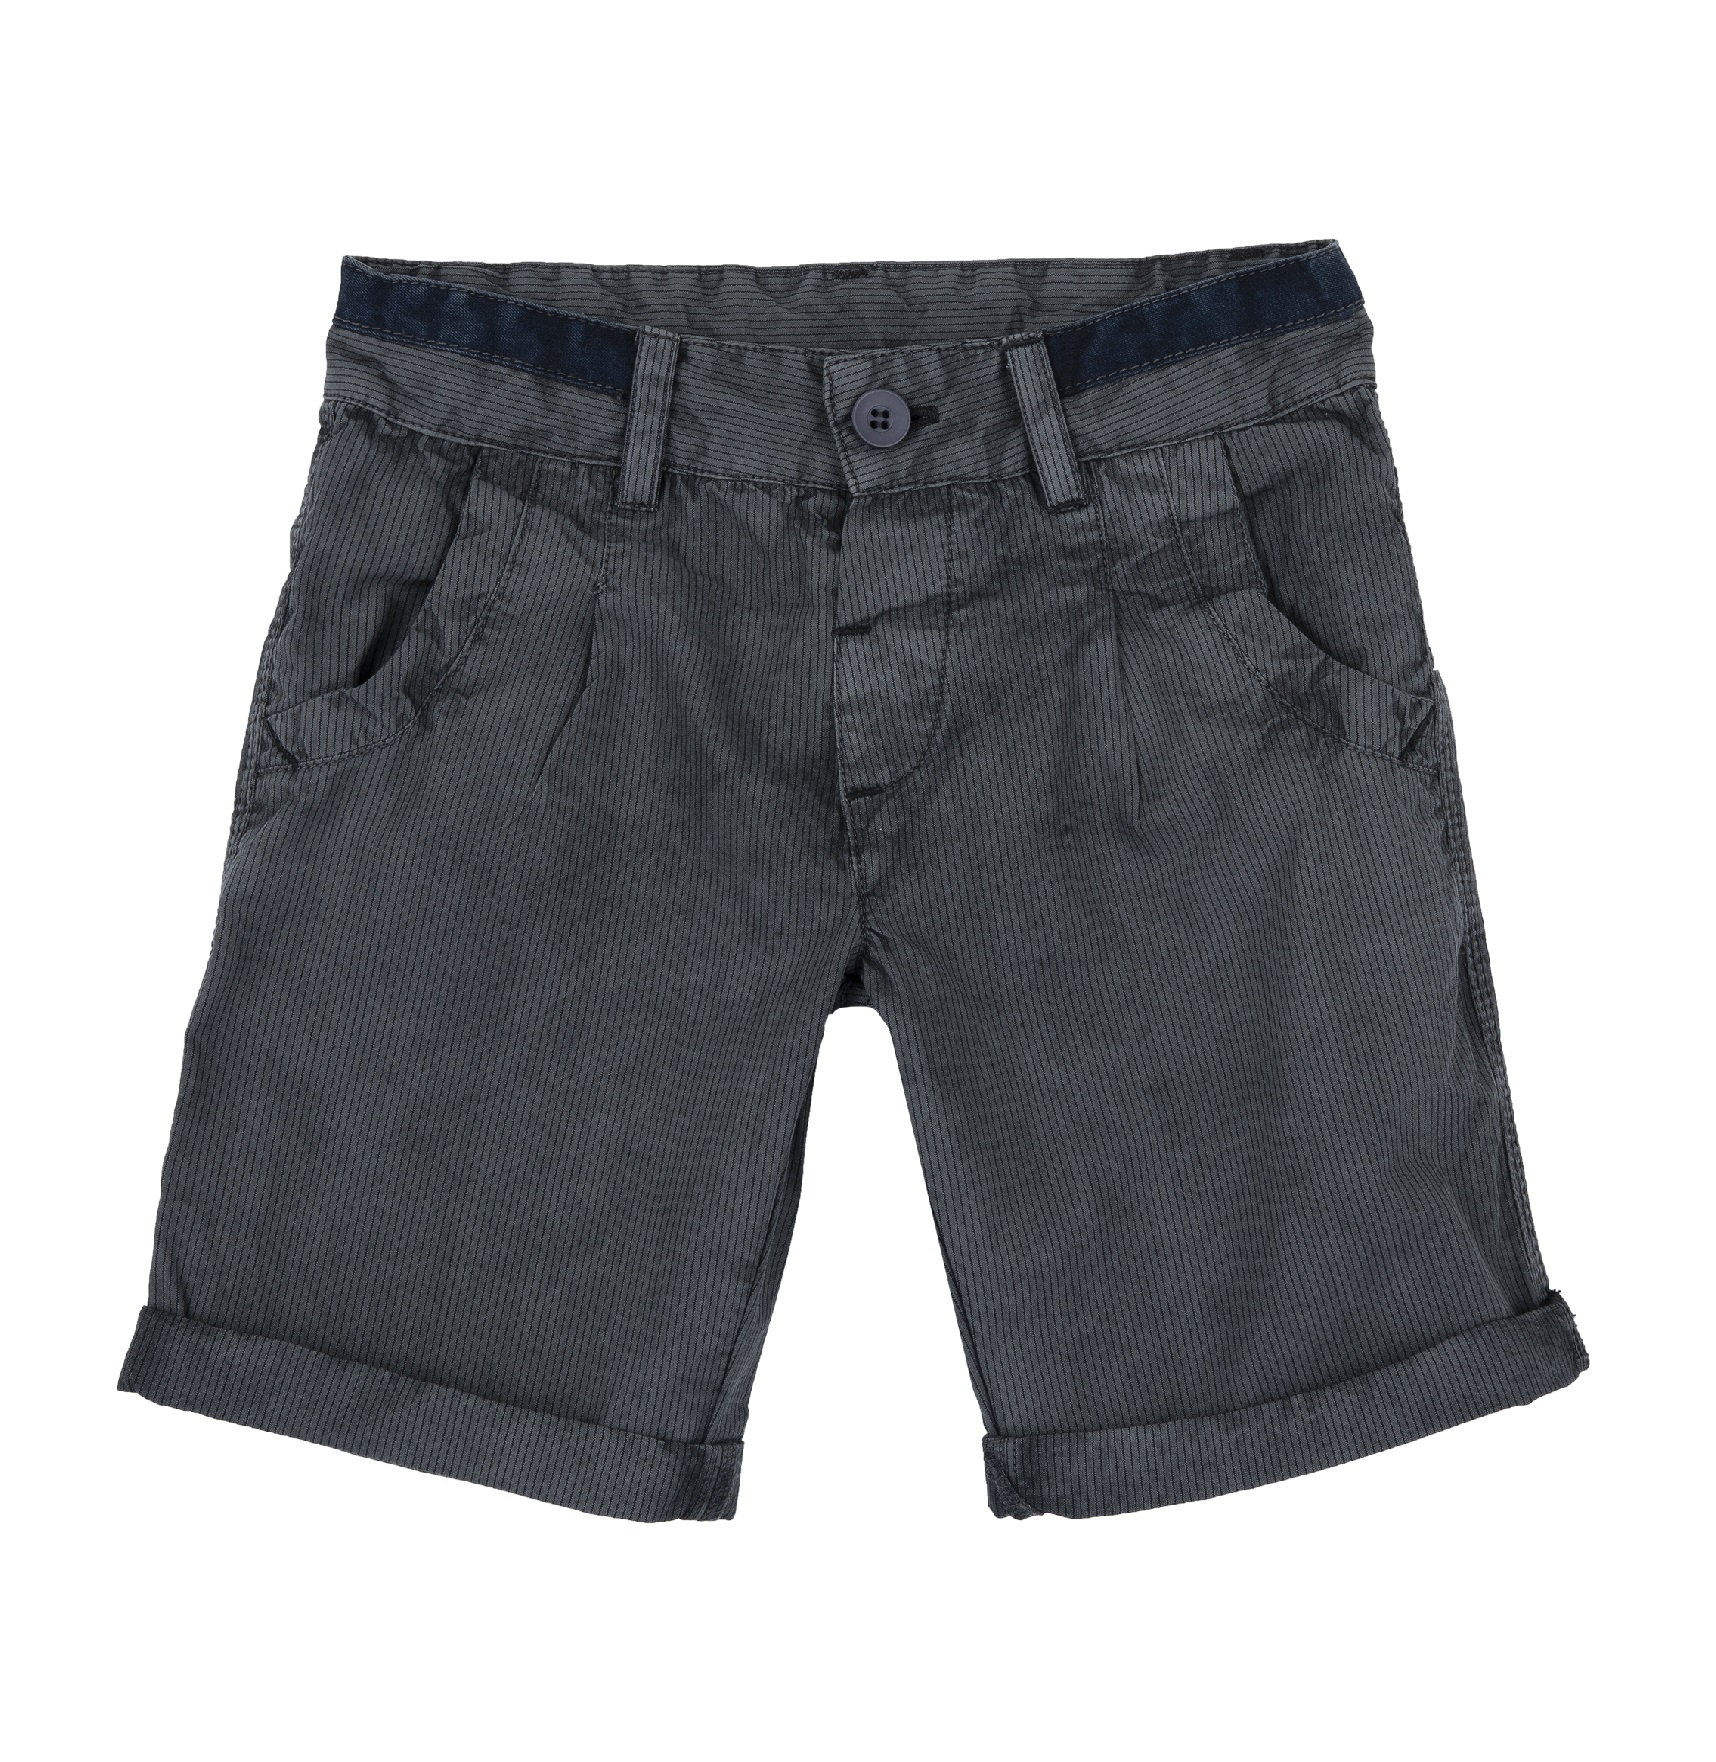 Pantaloni Copii Chicco, Negru, 00263-64mc